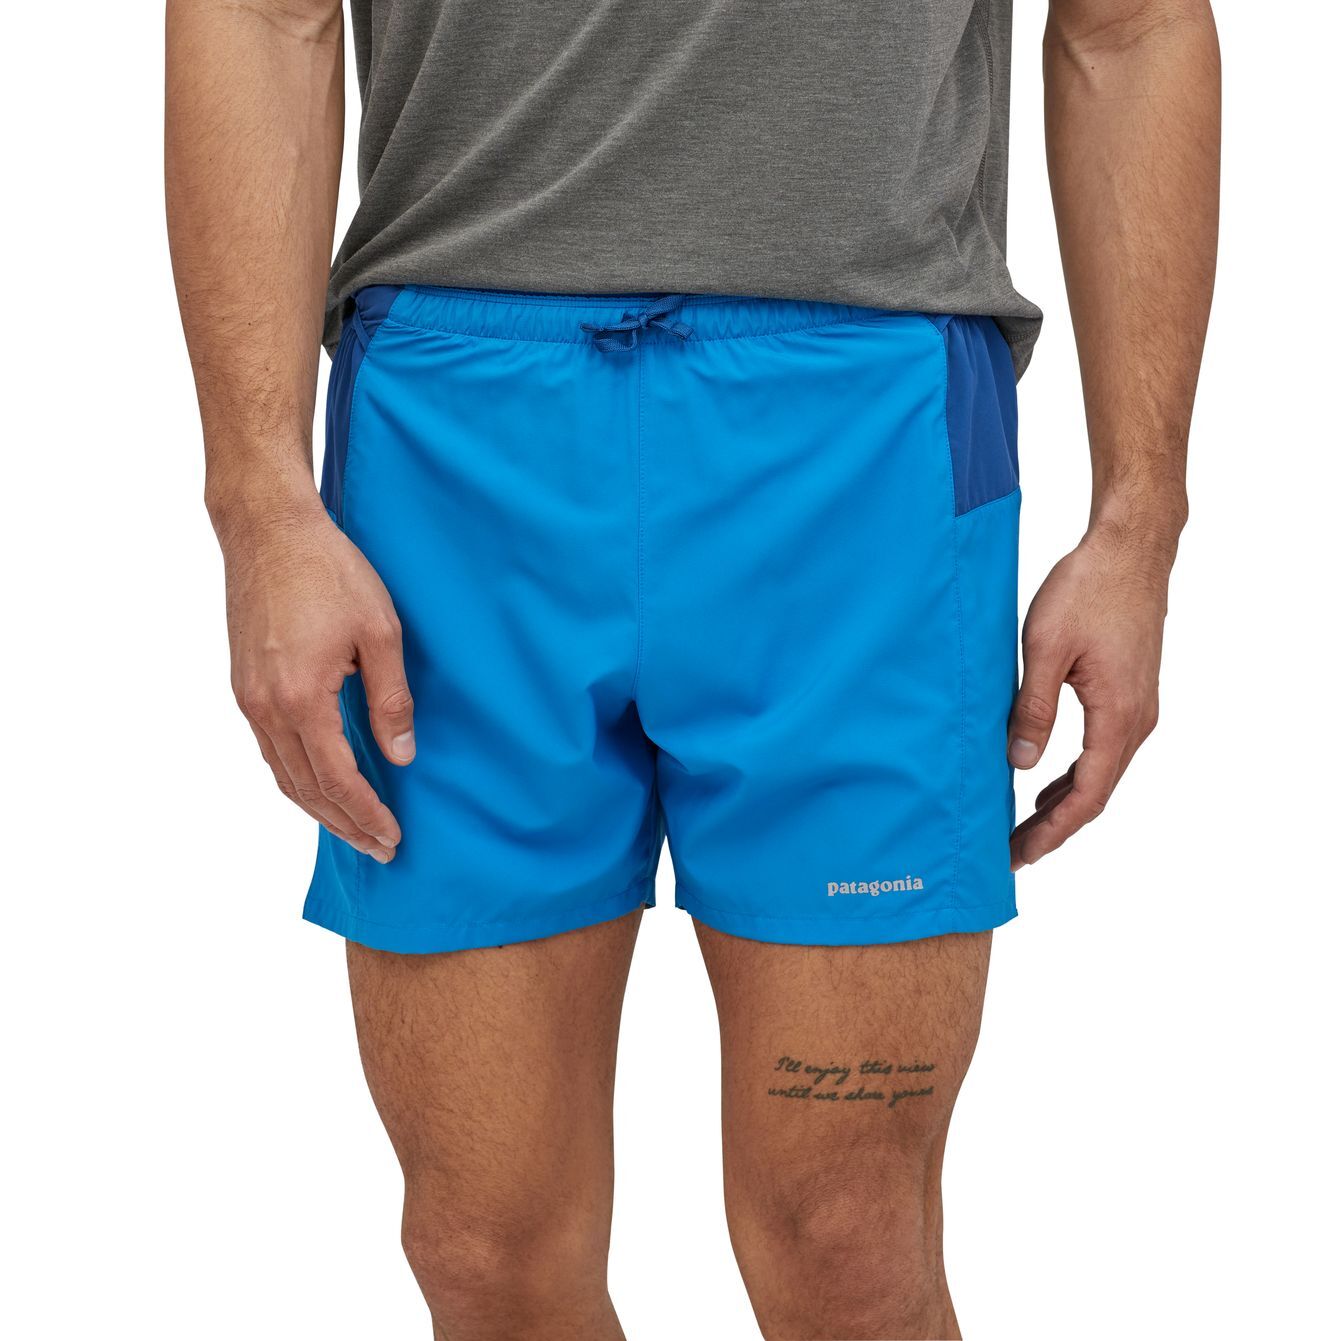 Patagonia Strider Pro Shorts - 5" - Men's